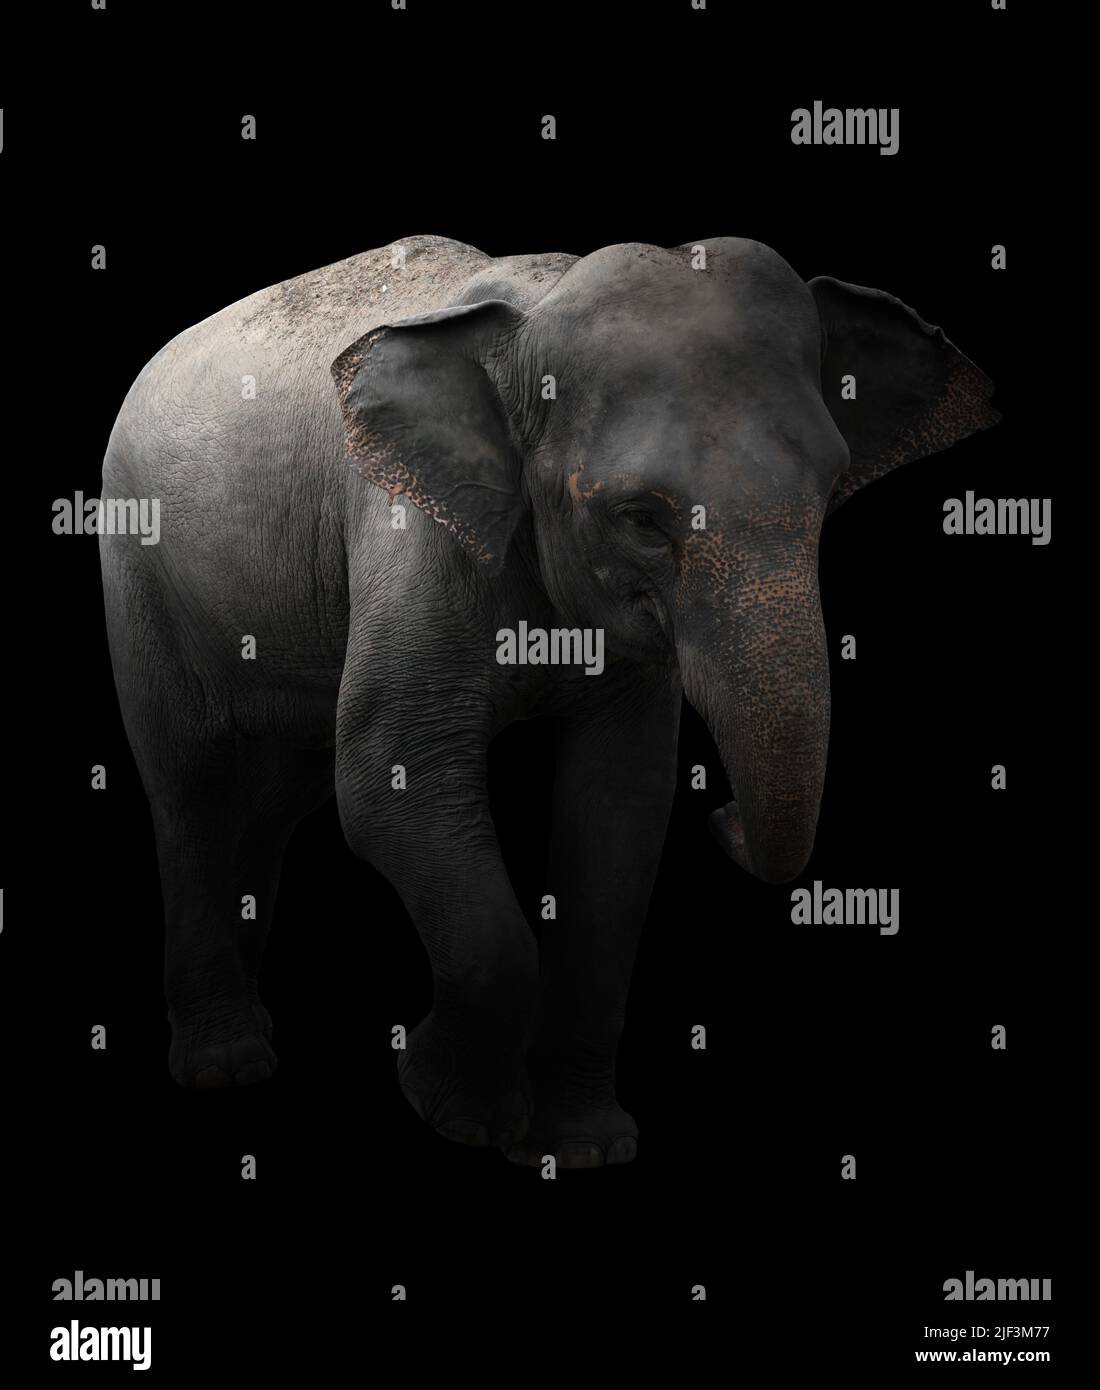 éléphant d'asie debout dans l'obscurité Banque D'Images